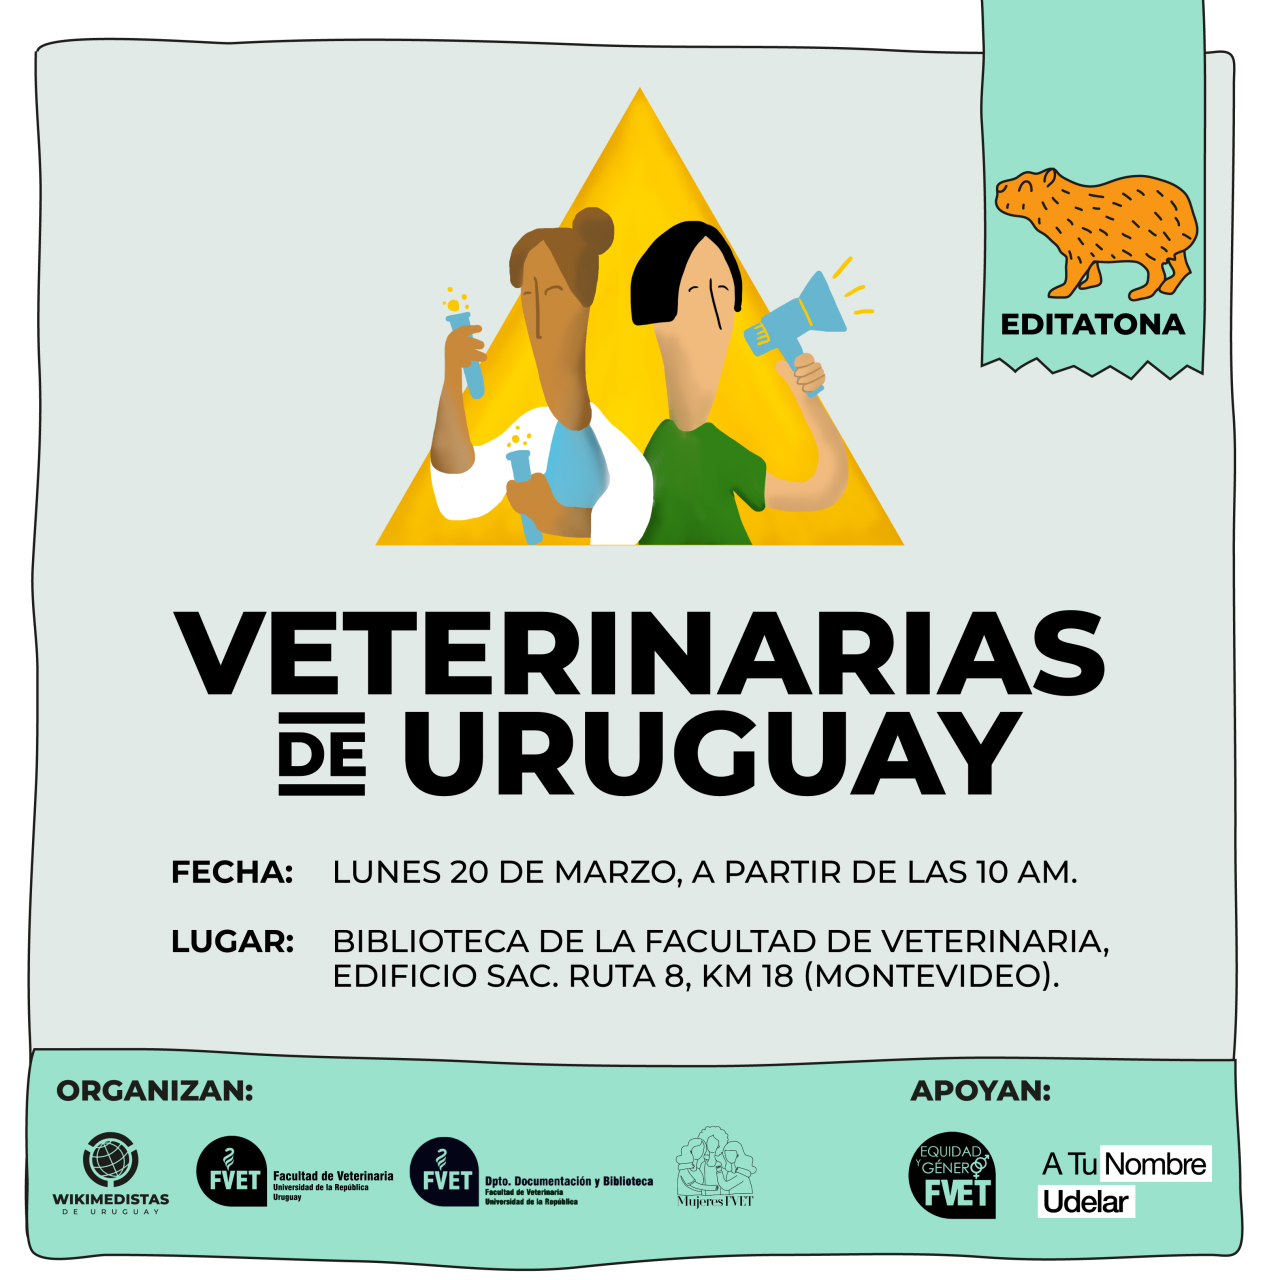 Editatona Veterinarias de Uruguay